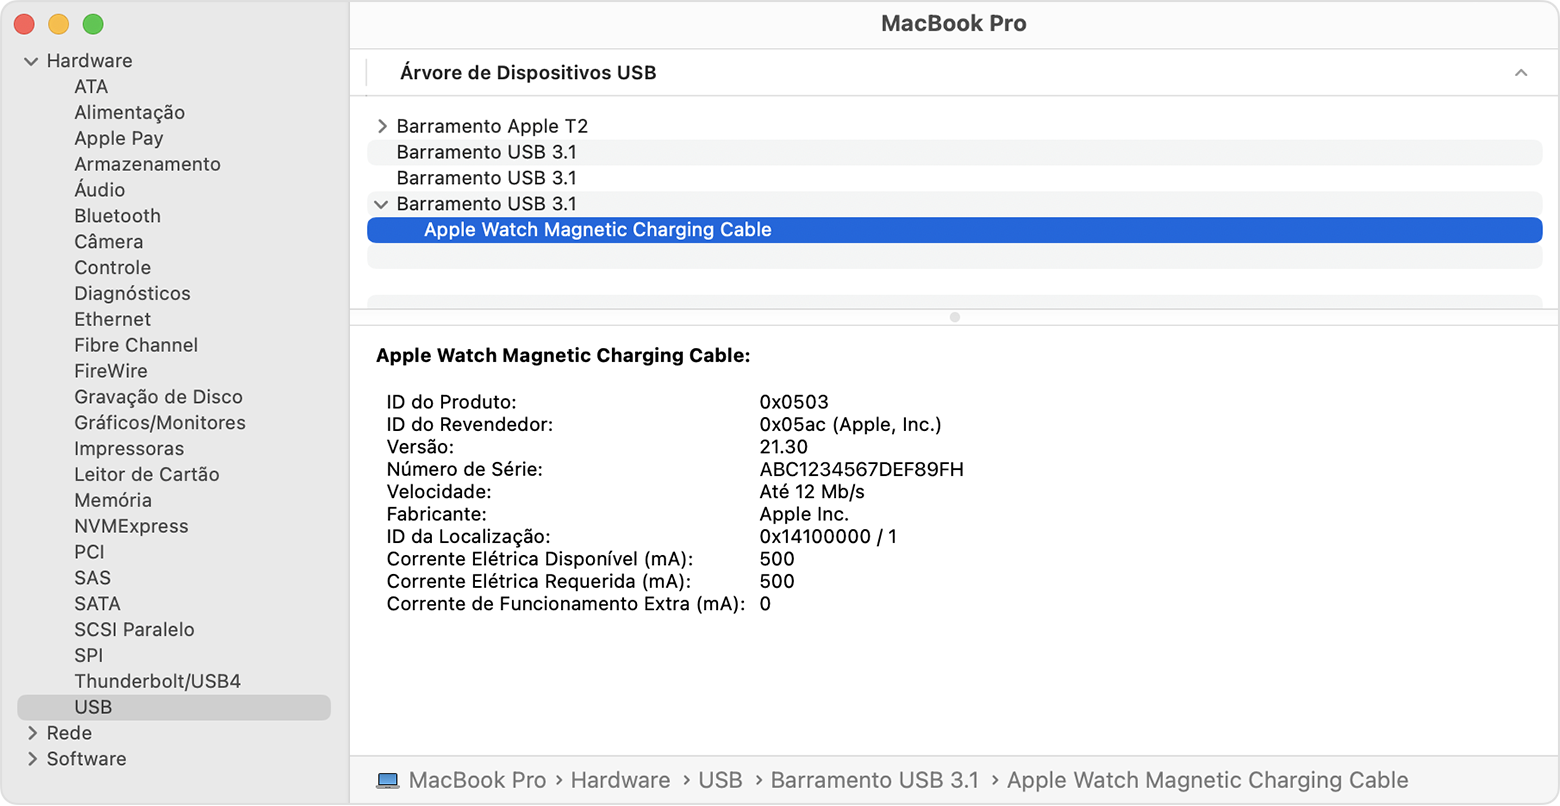 "Relatório do Sistema" do MacBook Pro exibindo as informações do fabricante do cabo de carregamento magnético para Apple Watch